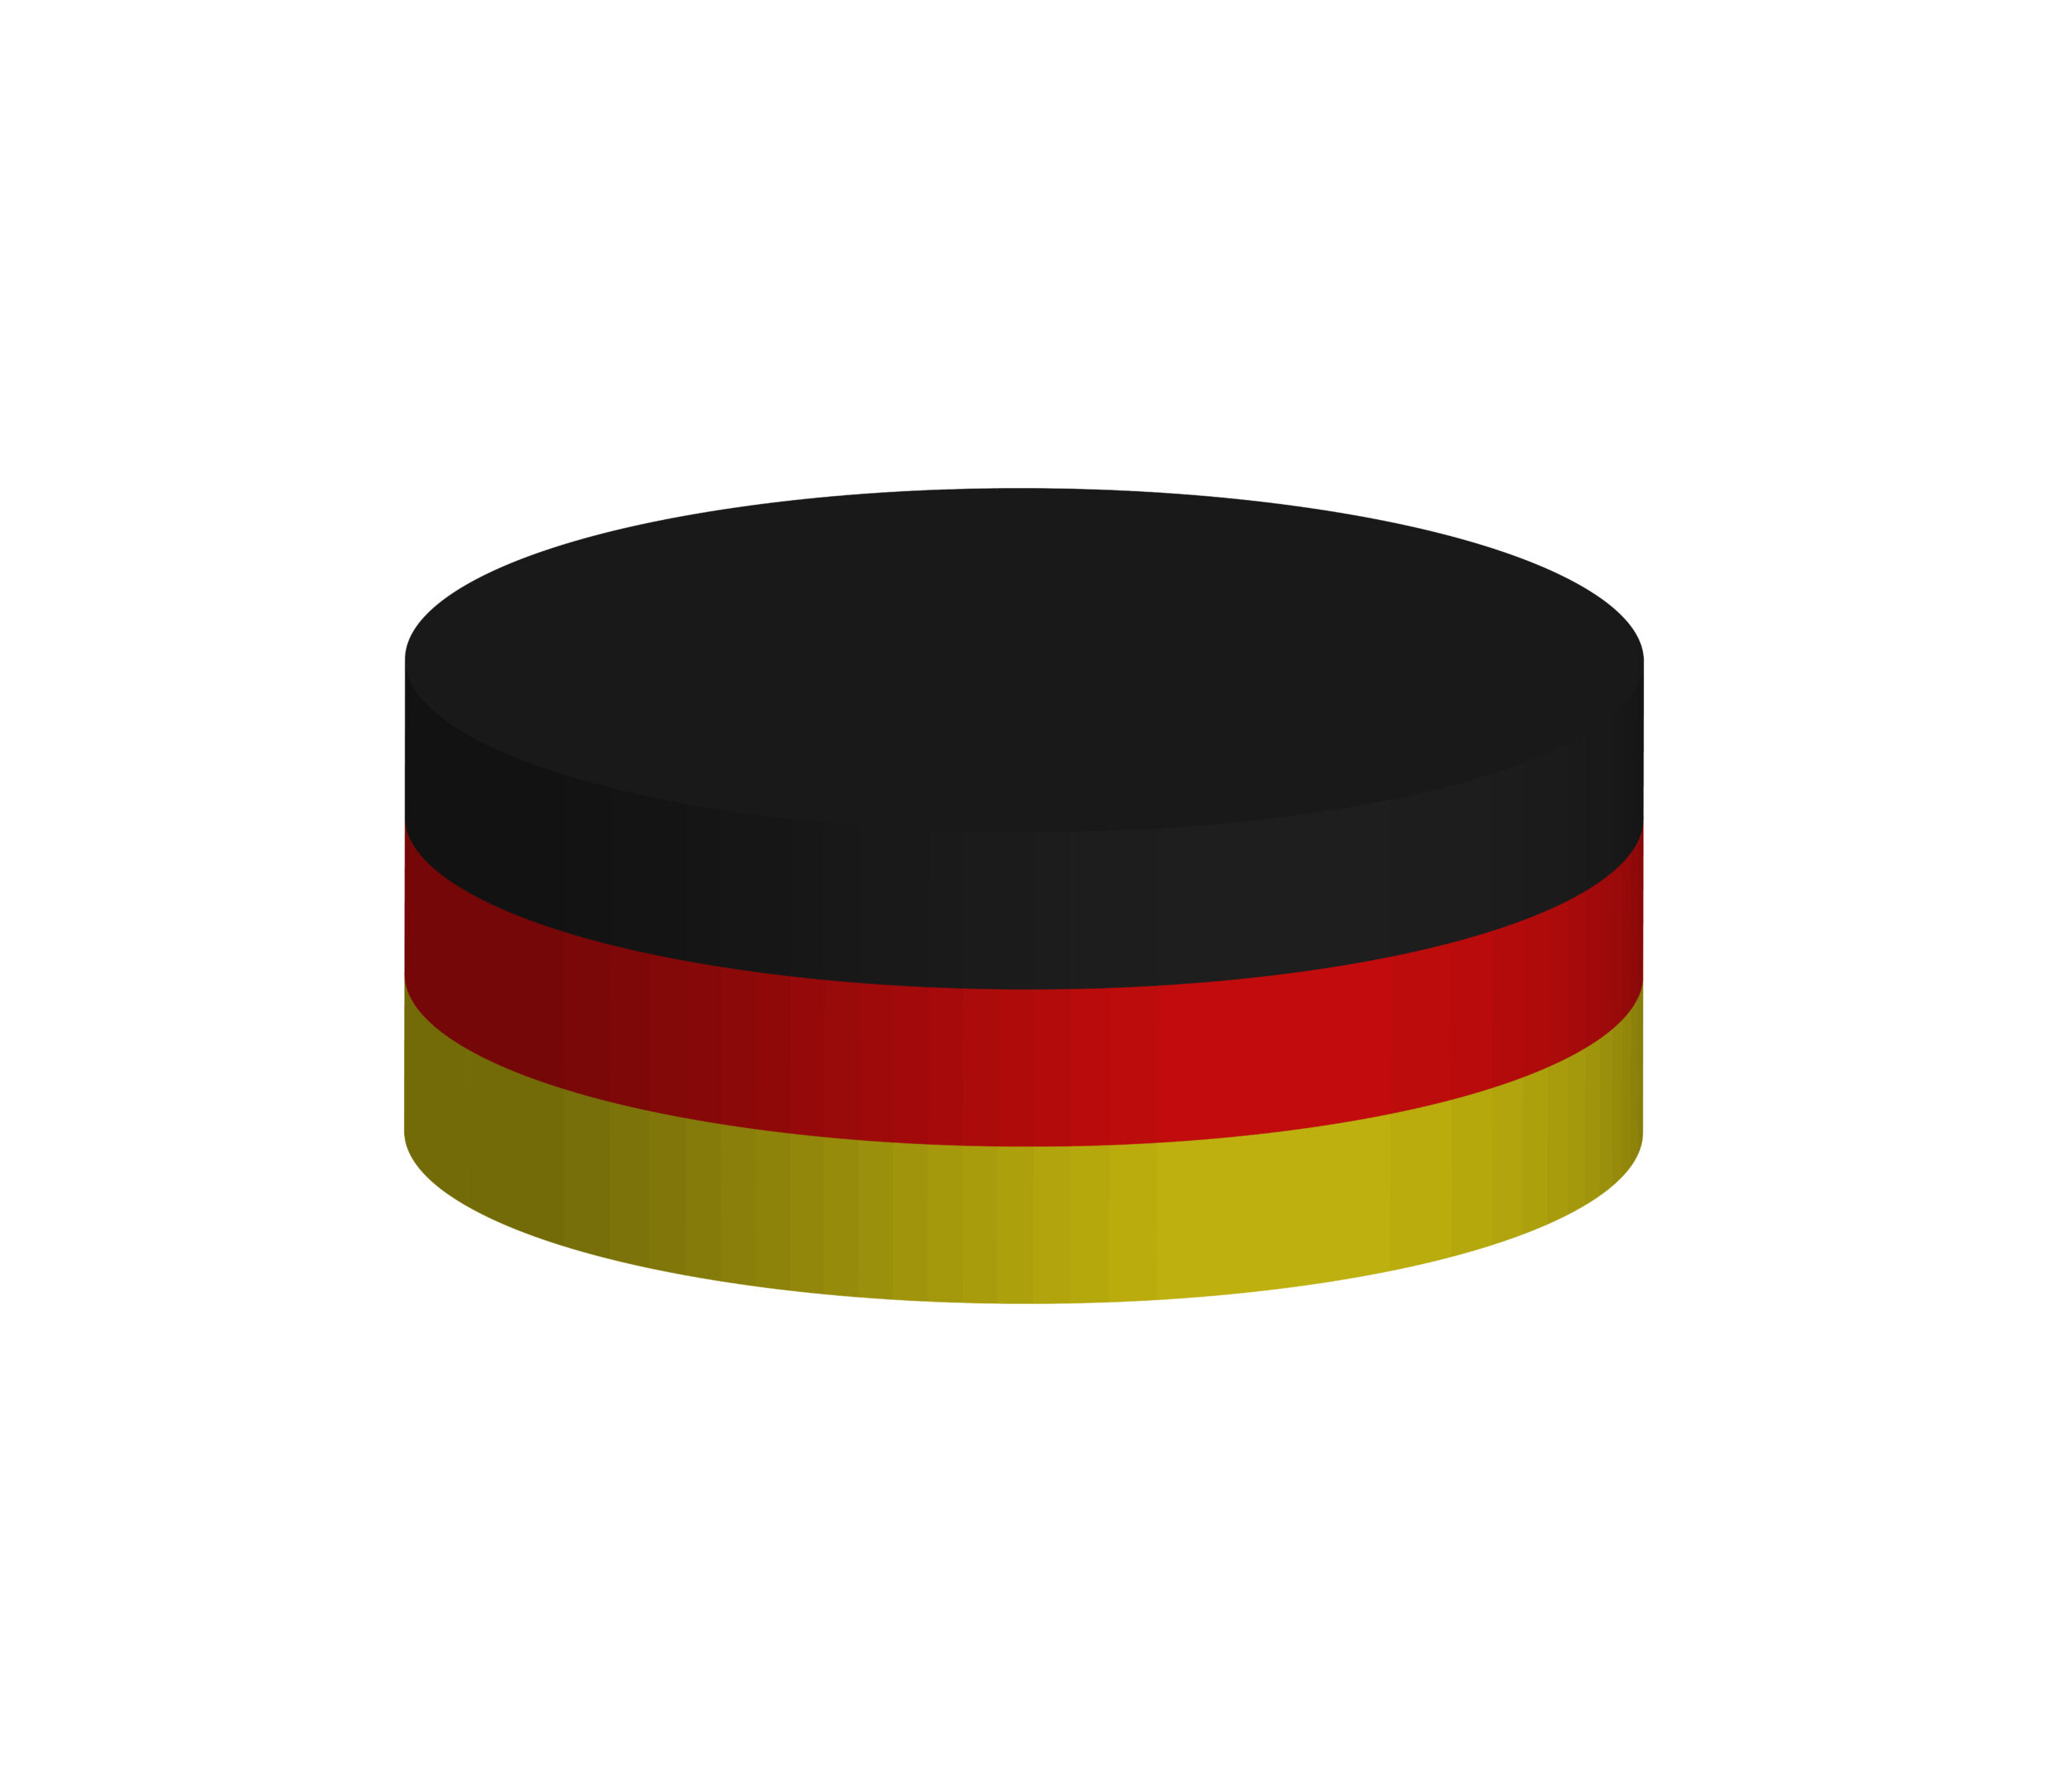 L’Allemagne crée l’exploit en se qualifiant pour la finale contre les USA, l’équipe la plus performante de cette édition du Mondial de Hockey.